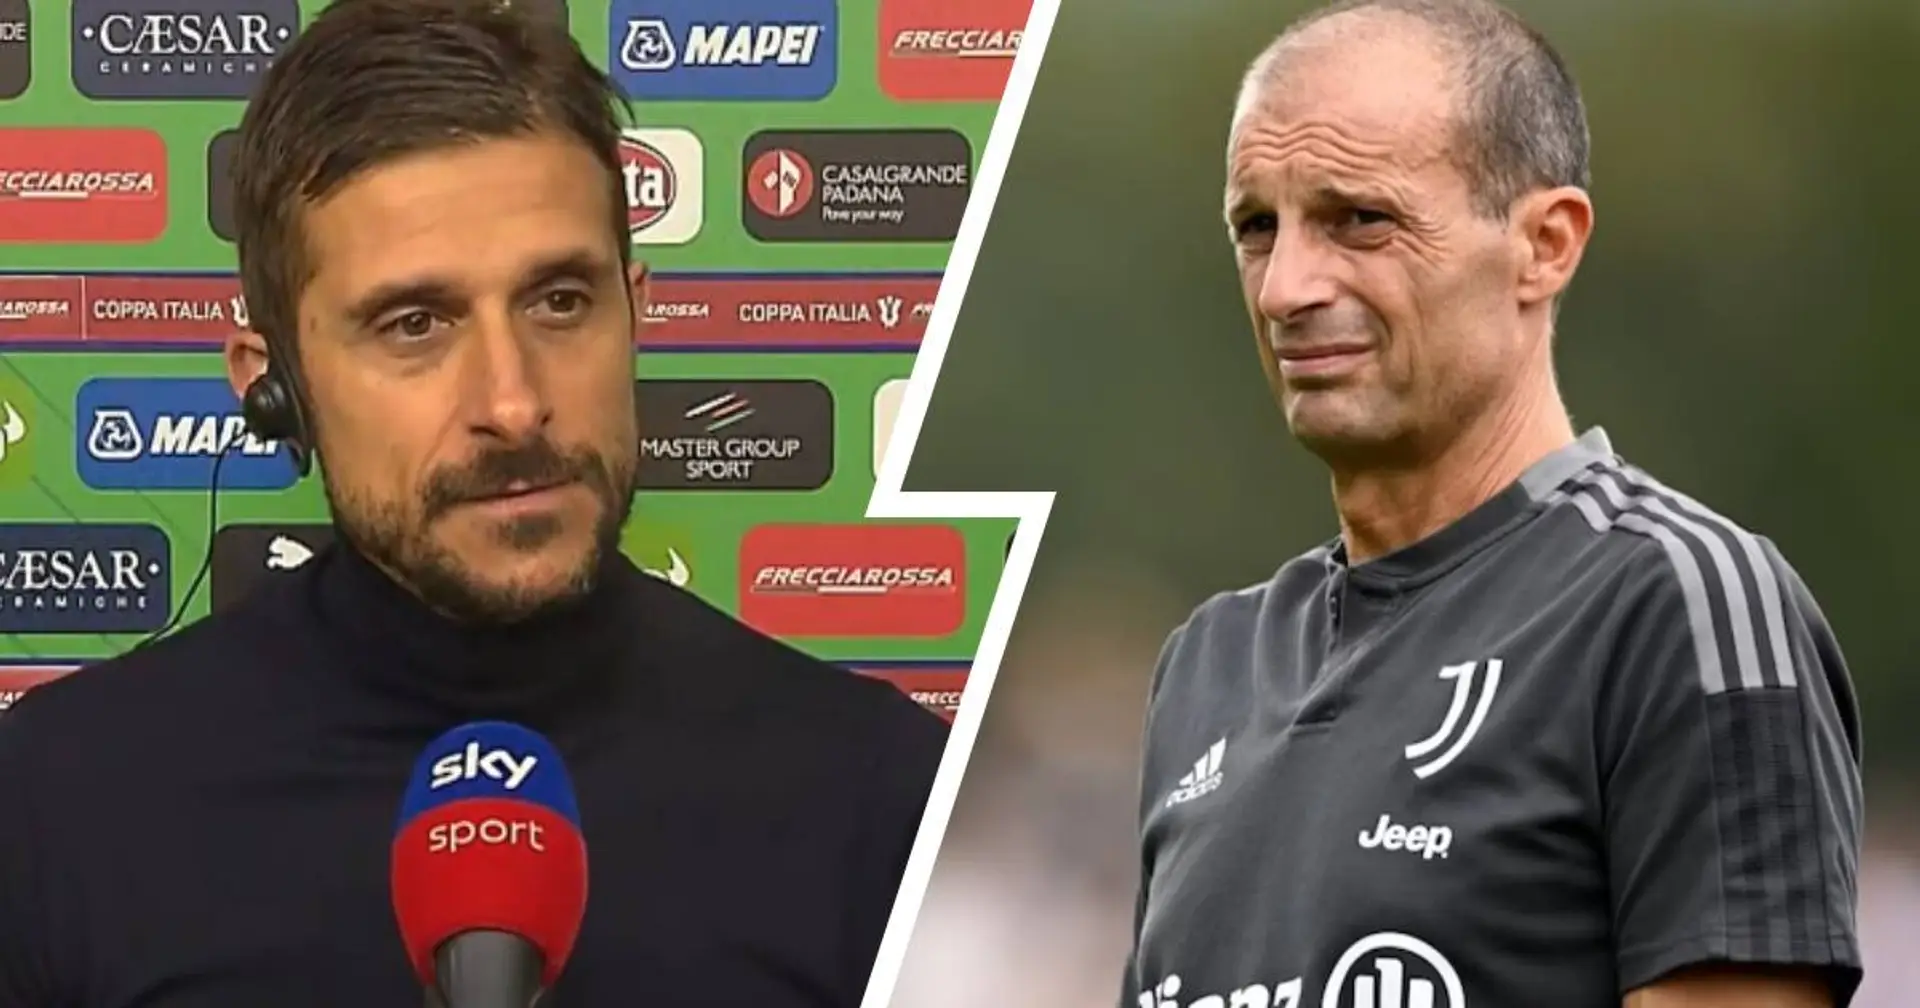 Il tecnico del Sassuolo sfida la Juve: "Me ne frego del momento difficile, non siamo vittime sacrificali"